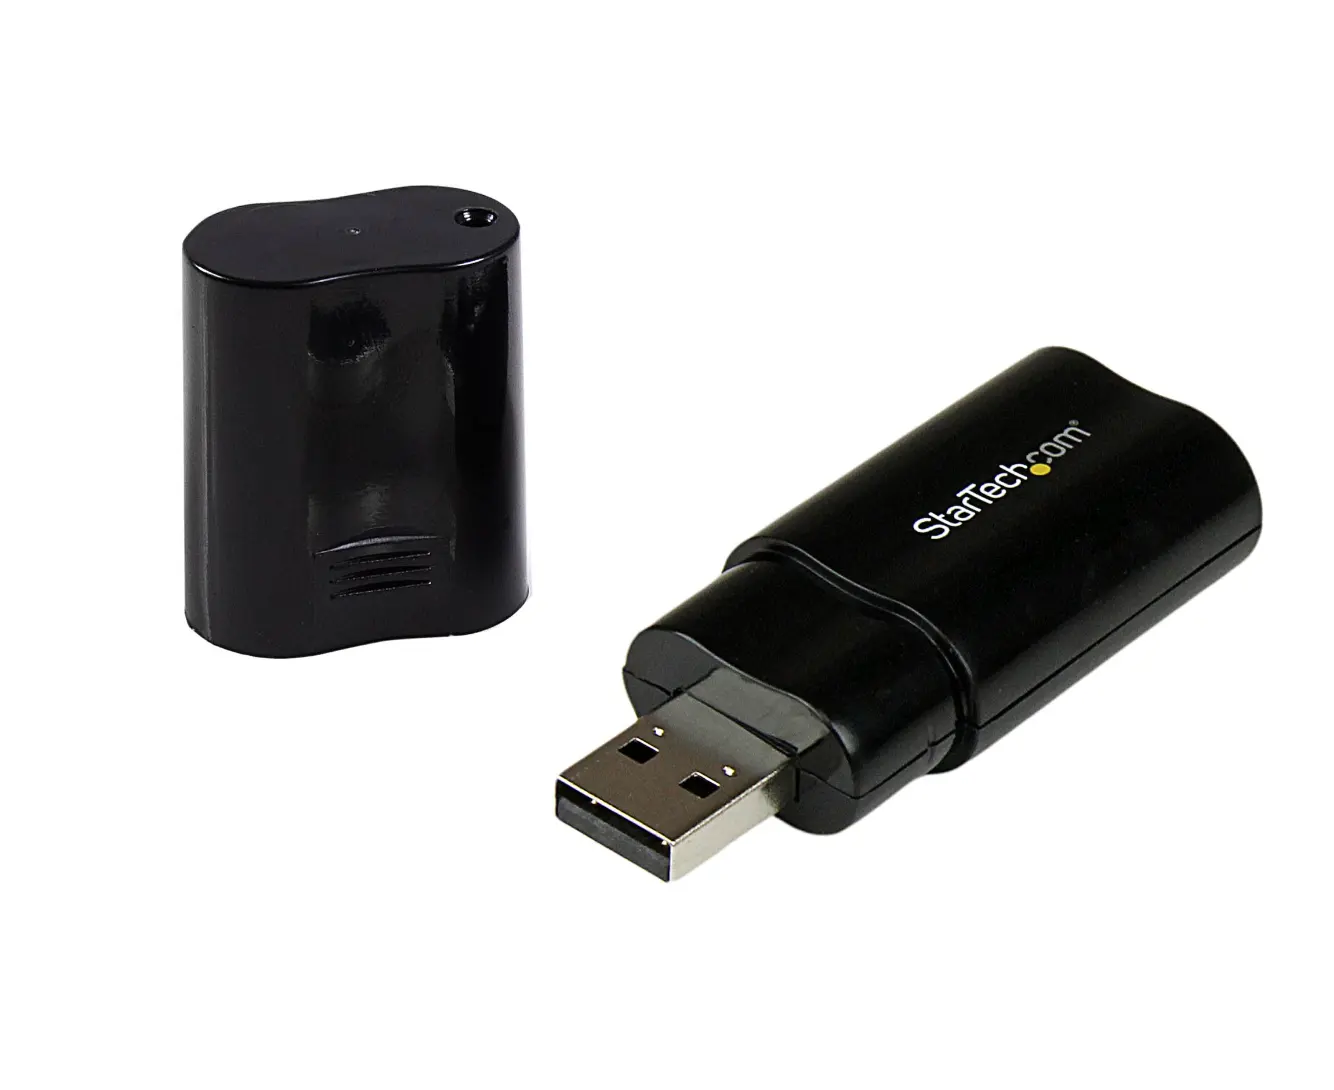 Dongle Audio USB 2.0 della migliore qualità per scopi di trasmissione Audio facili e Wireless dall'esportatore statunitense a prezzi ragionevoli